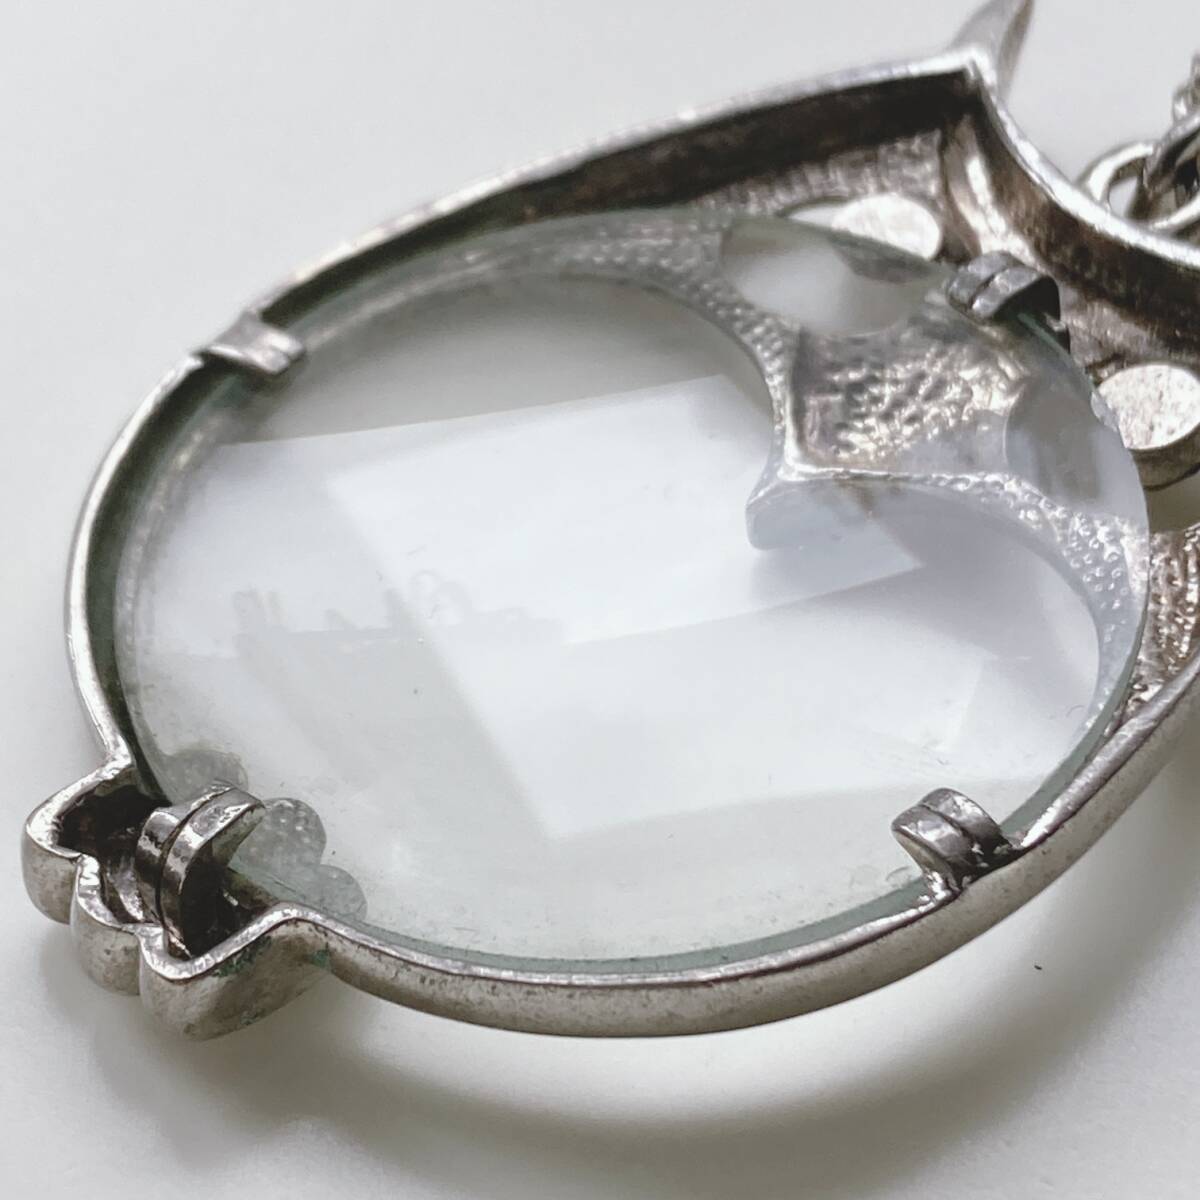  стекло лупа подвеска ушко (уголок) zk.... серебряный цвет насекомое очки увеличительное стекло линзы колье *japan Vintage jewelry accessories k0401